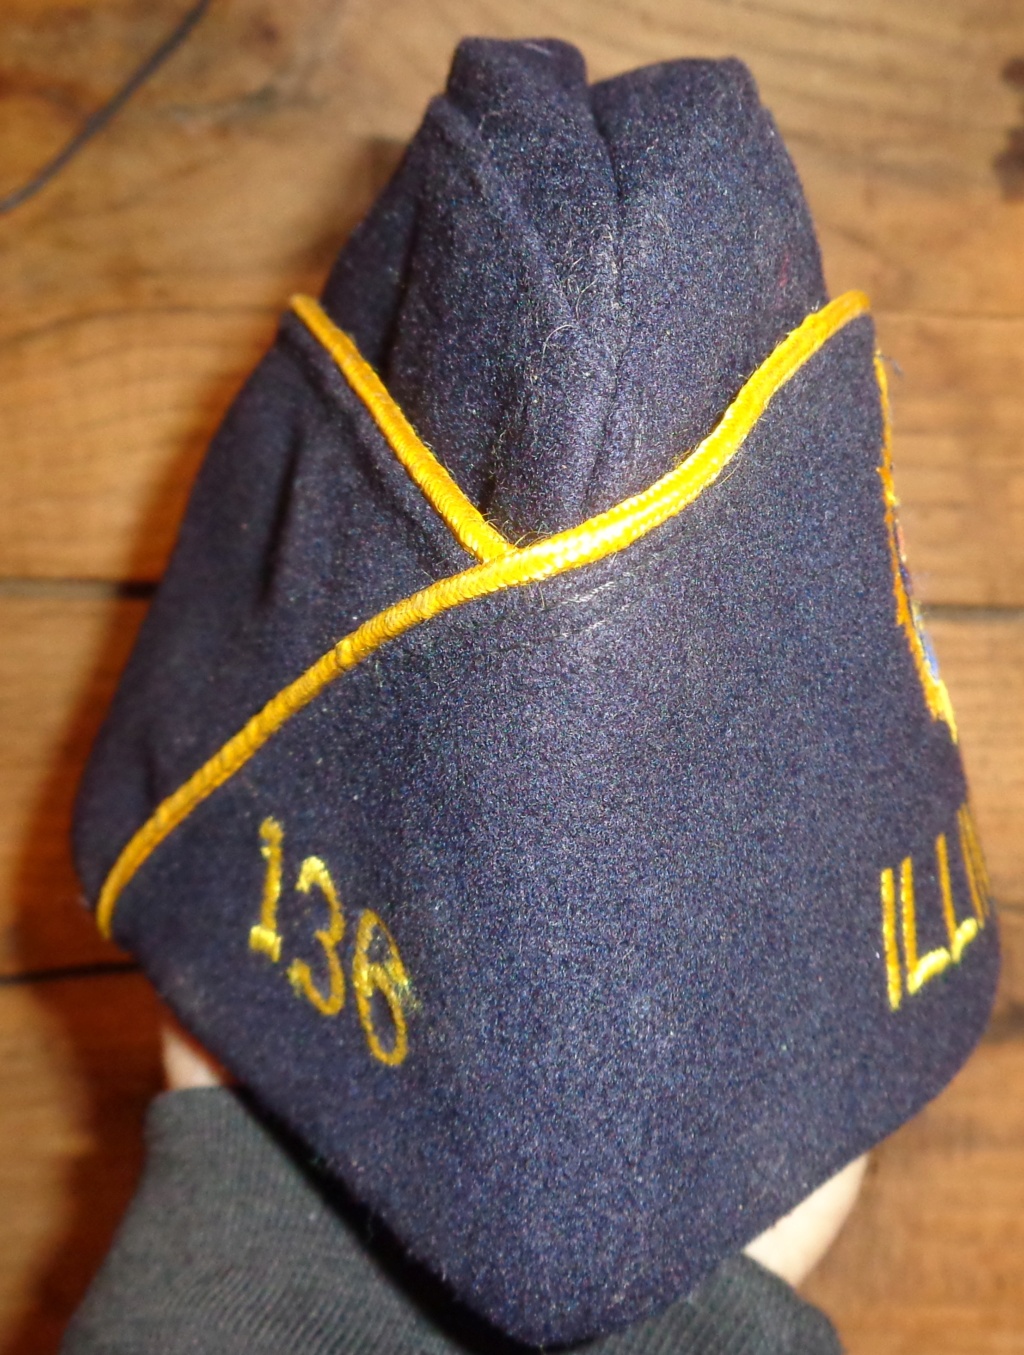 Identification bonnet de police US Bdp610